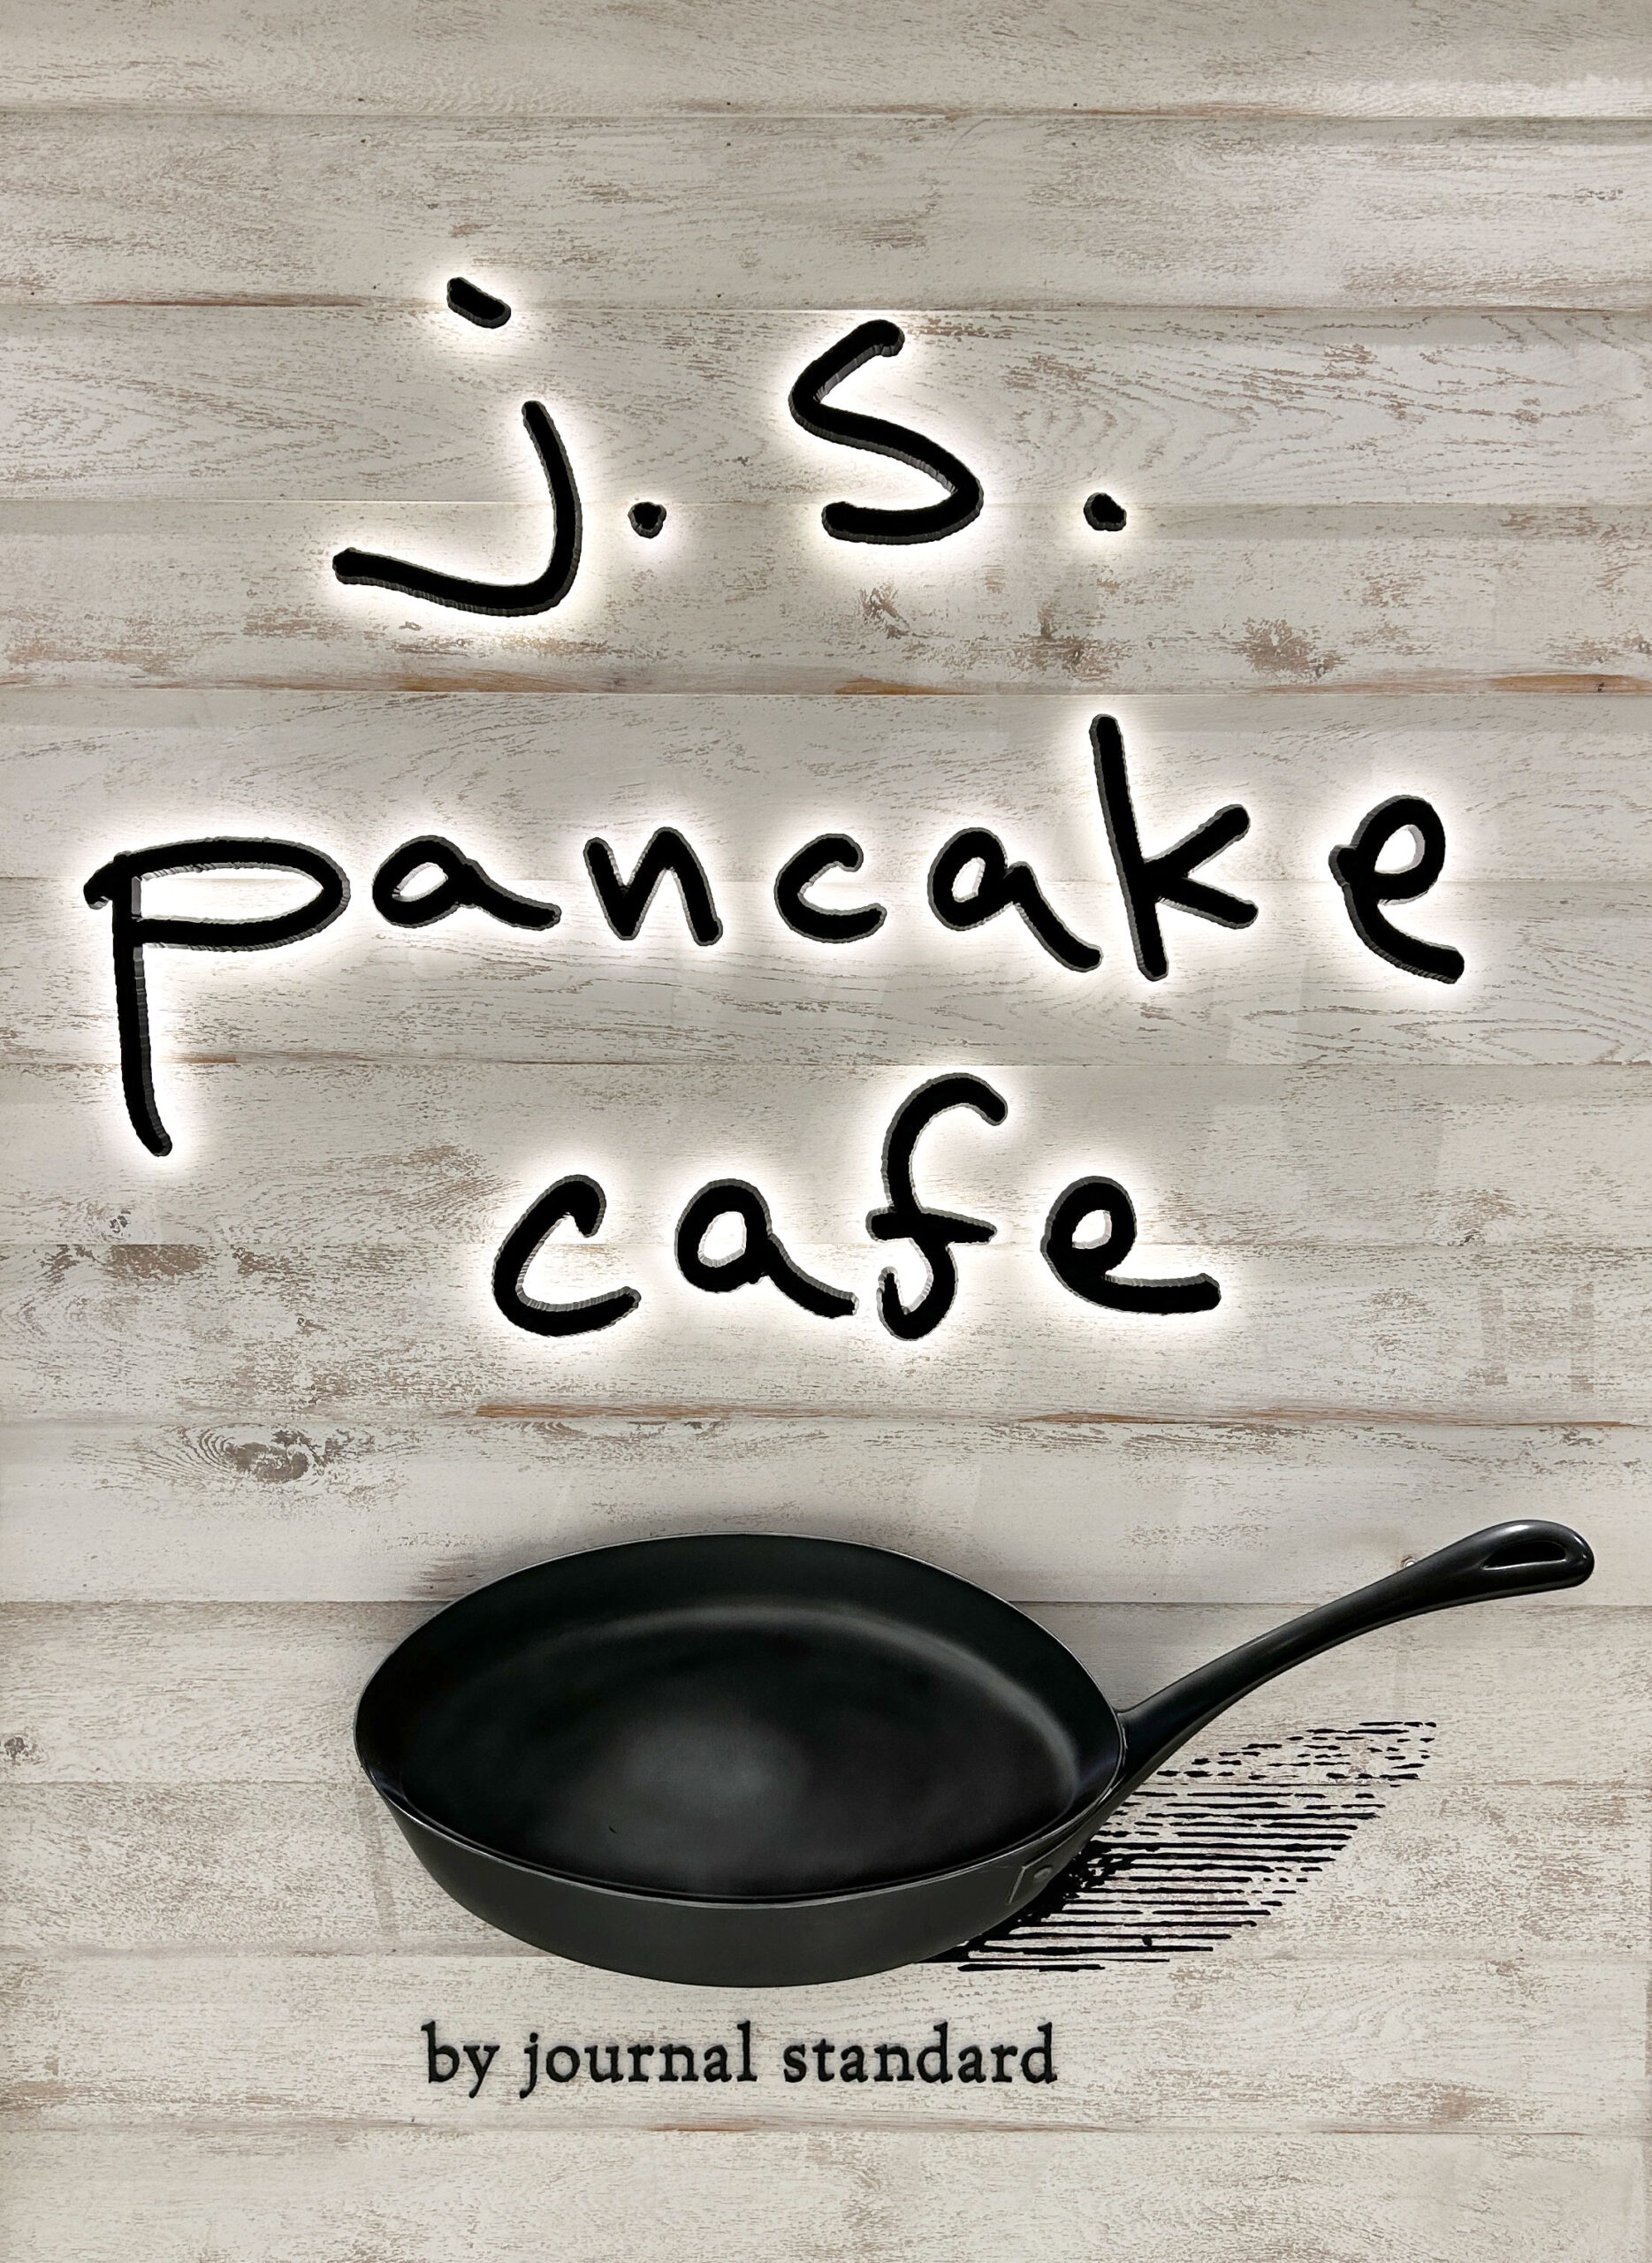 J.S. PANCAKE CAFE 町田モディ店の店長（ロゴ）の写真